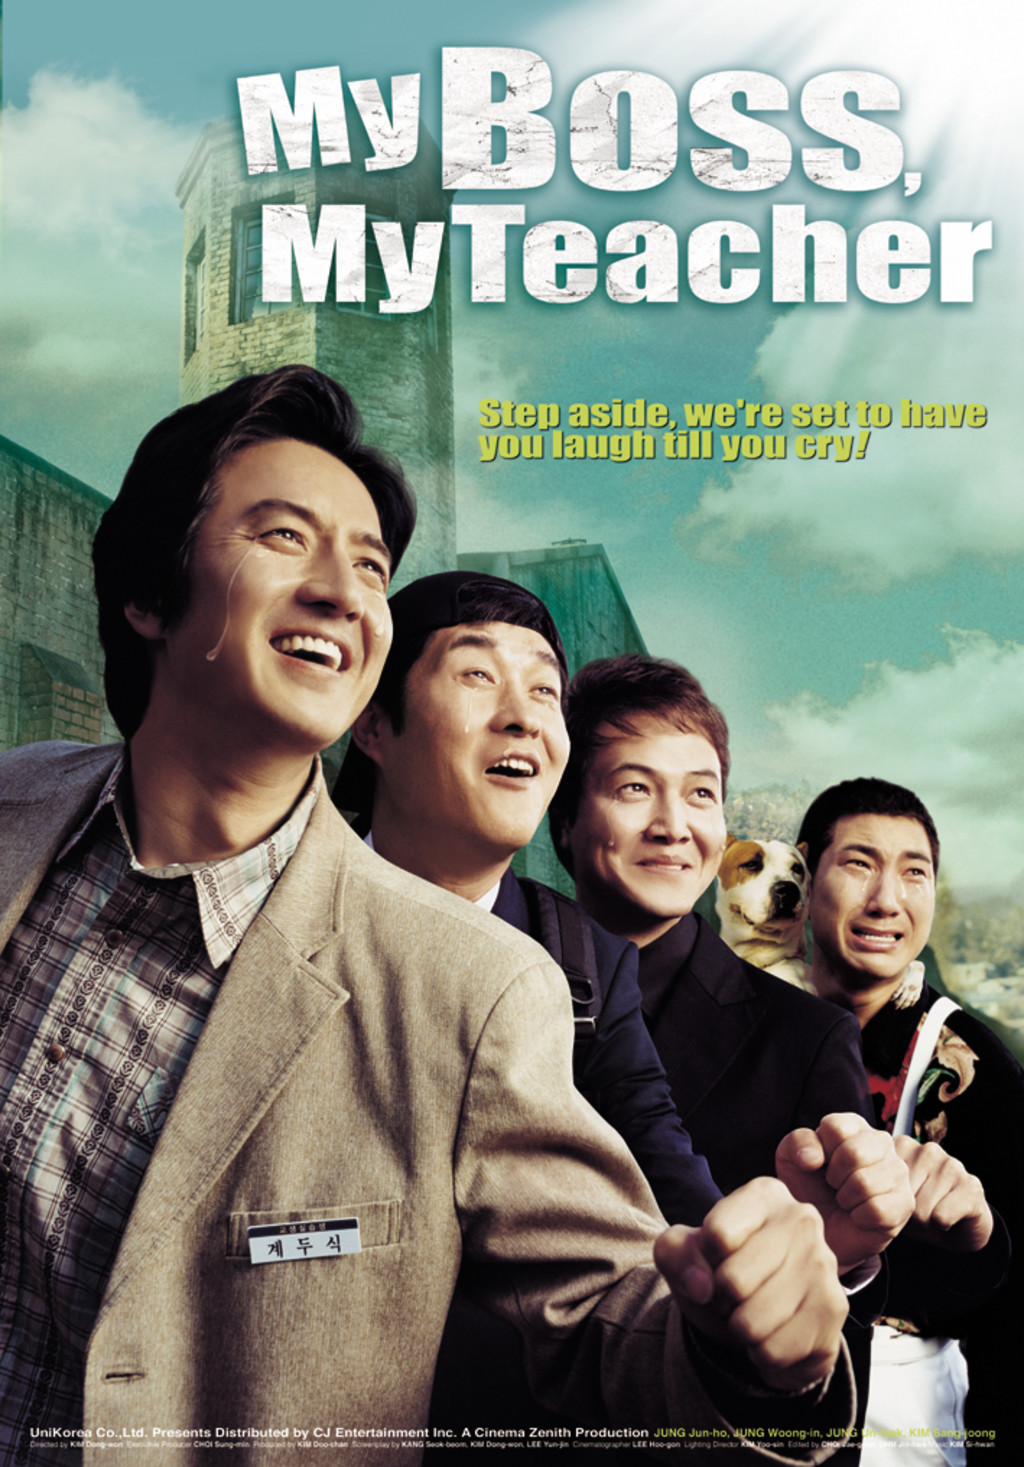 Watch My Boss, My Teacher on Netflix Today! | NetflixMovies.com